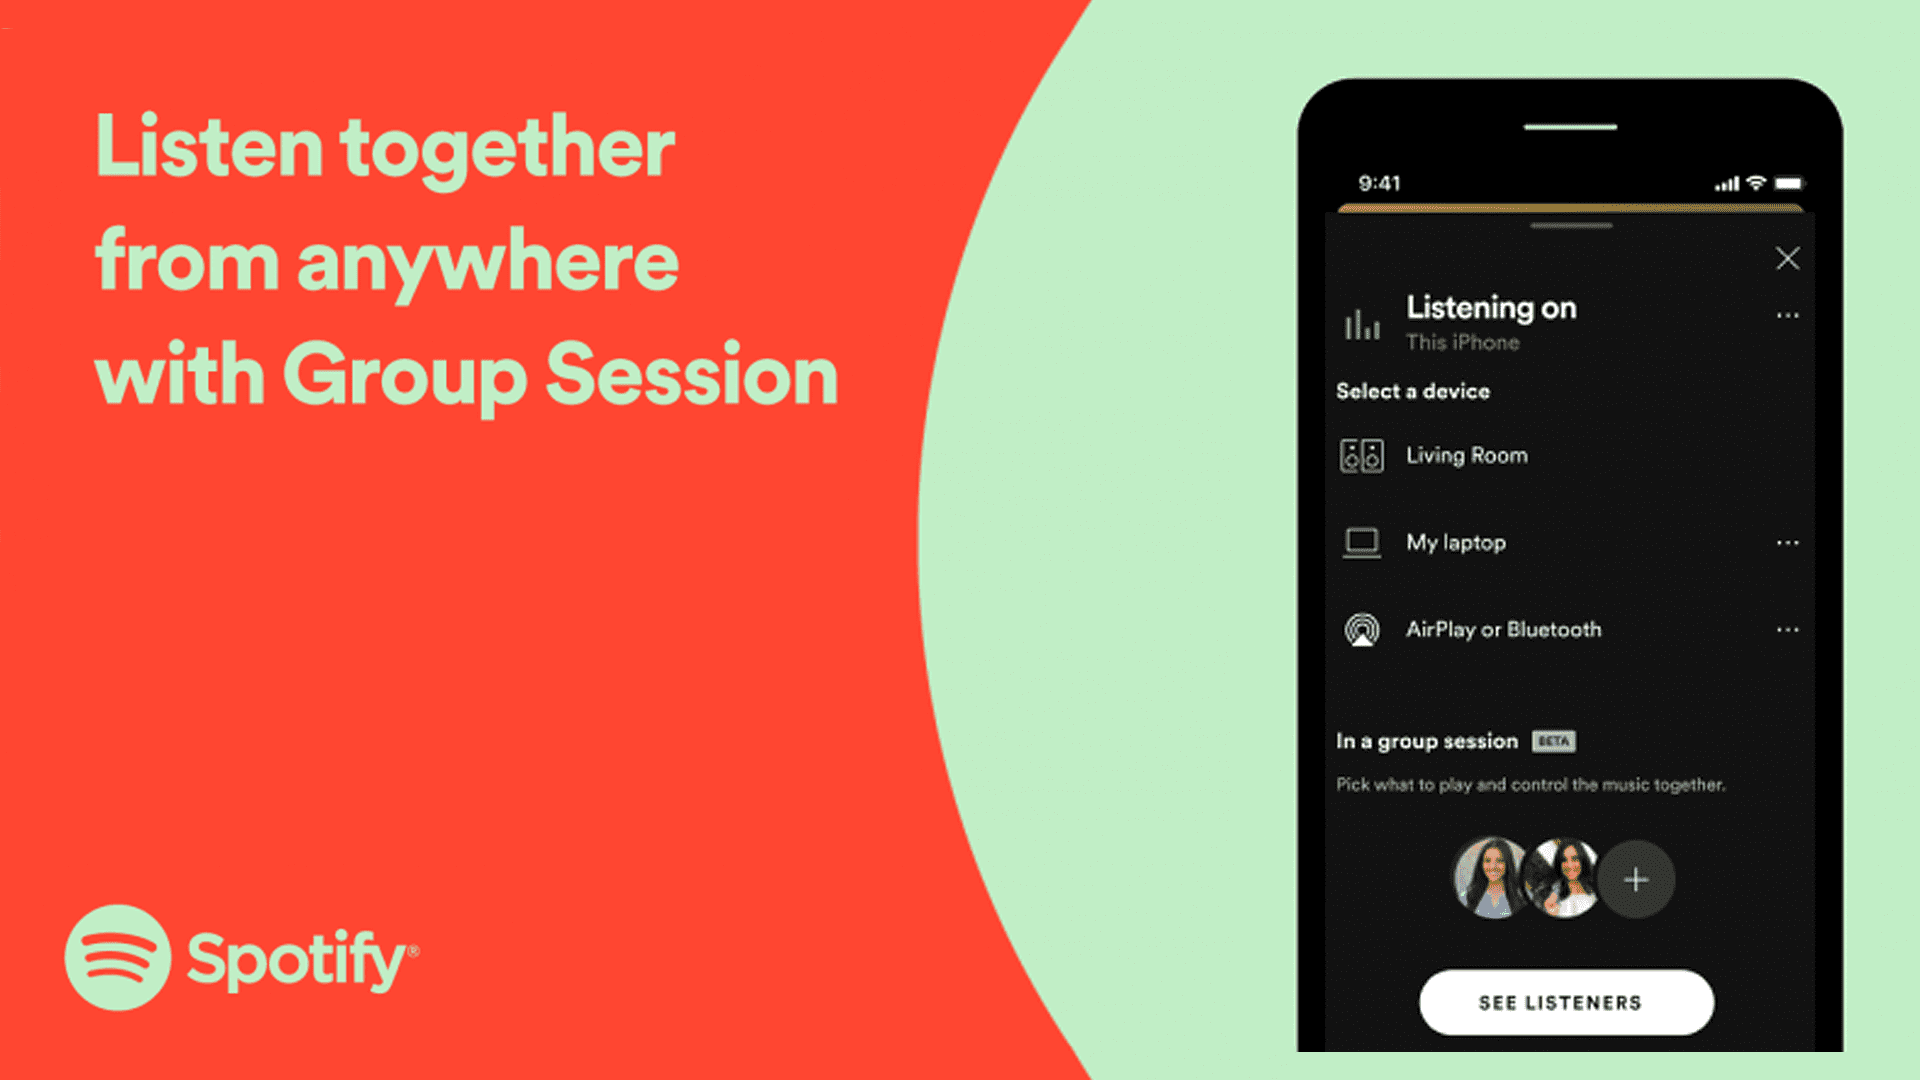 Spotify memperkenalkan pesta mendengarkan jarak jauh untuk pelanggan berbayar